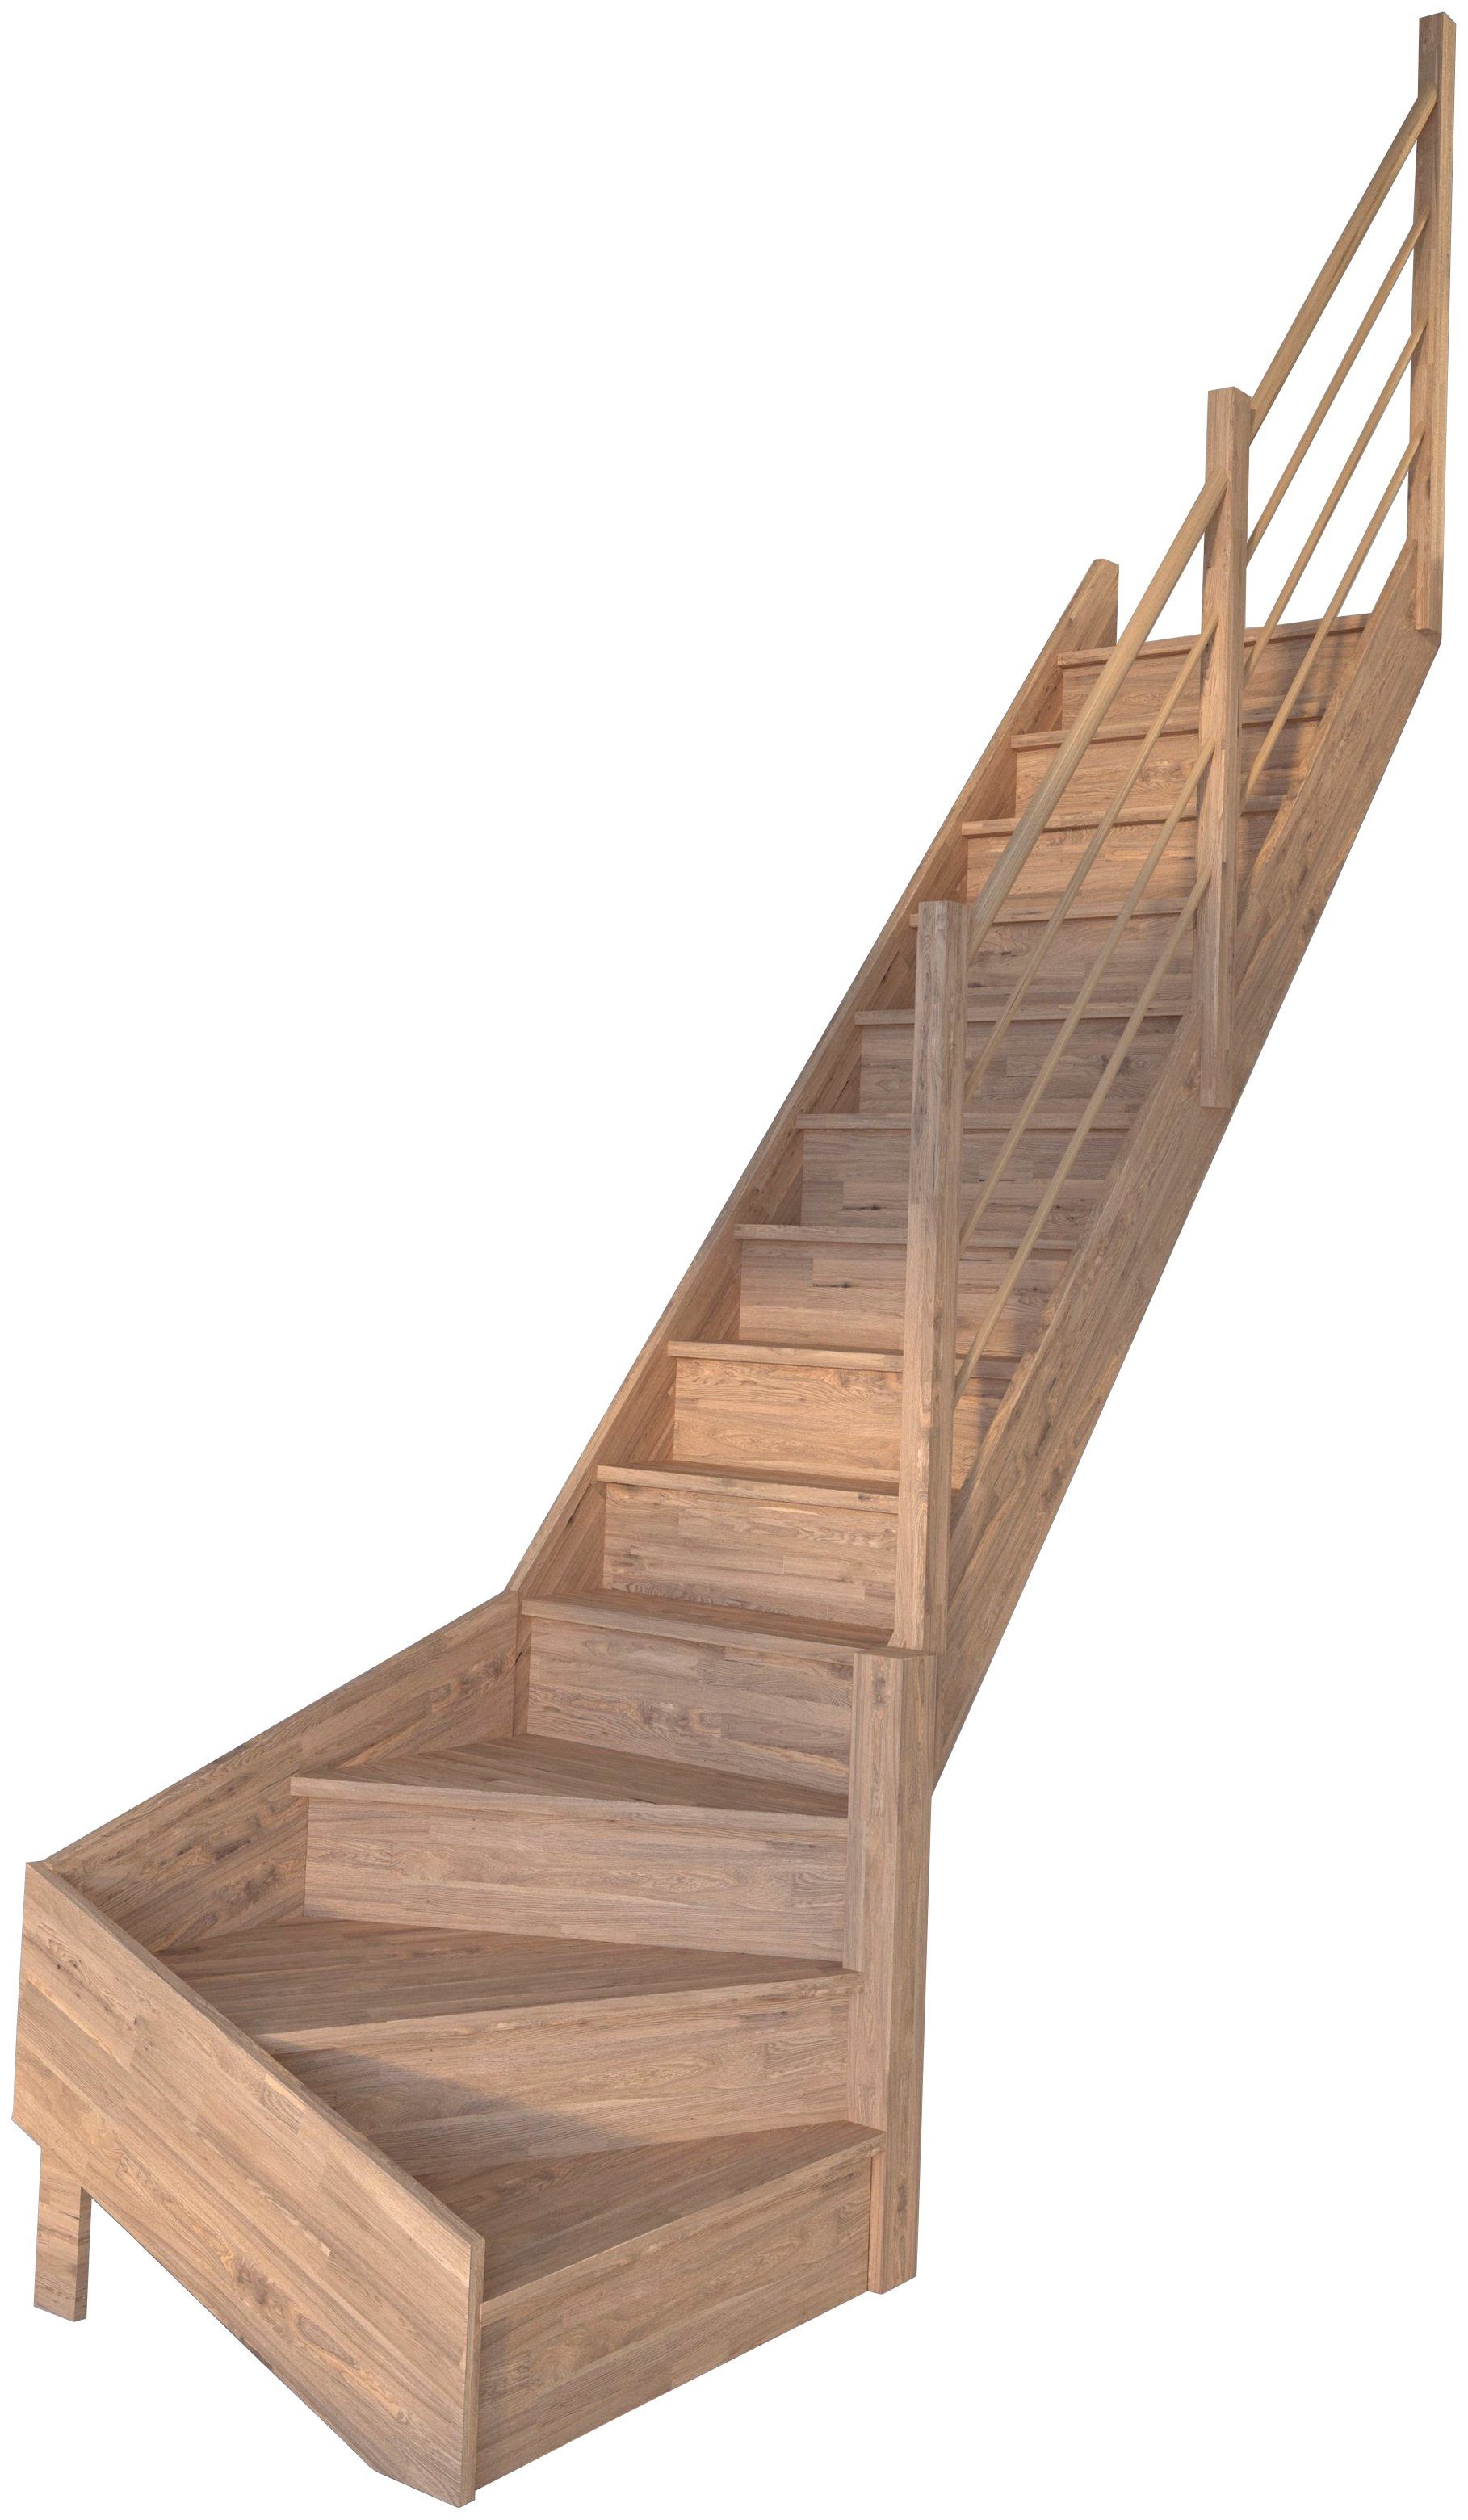 Starwood Raumspartreppe Massivholz Rhodos, Holz-Holz Design Geländer, für Geschosshöhen bis 300 cm, Stufen geschlossen, gewendelt Rechts, Durchgehende Wangenteile